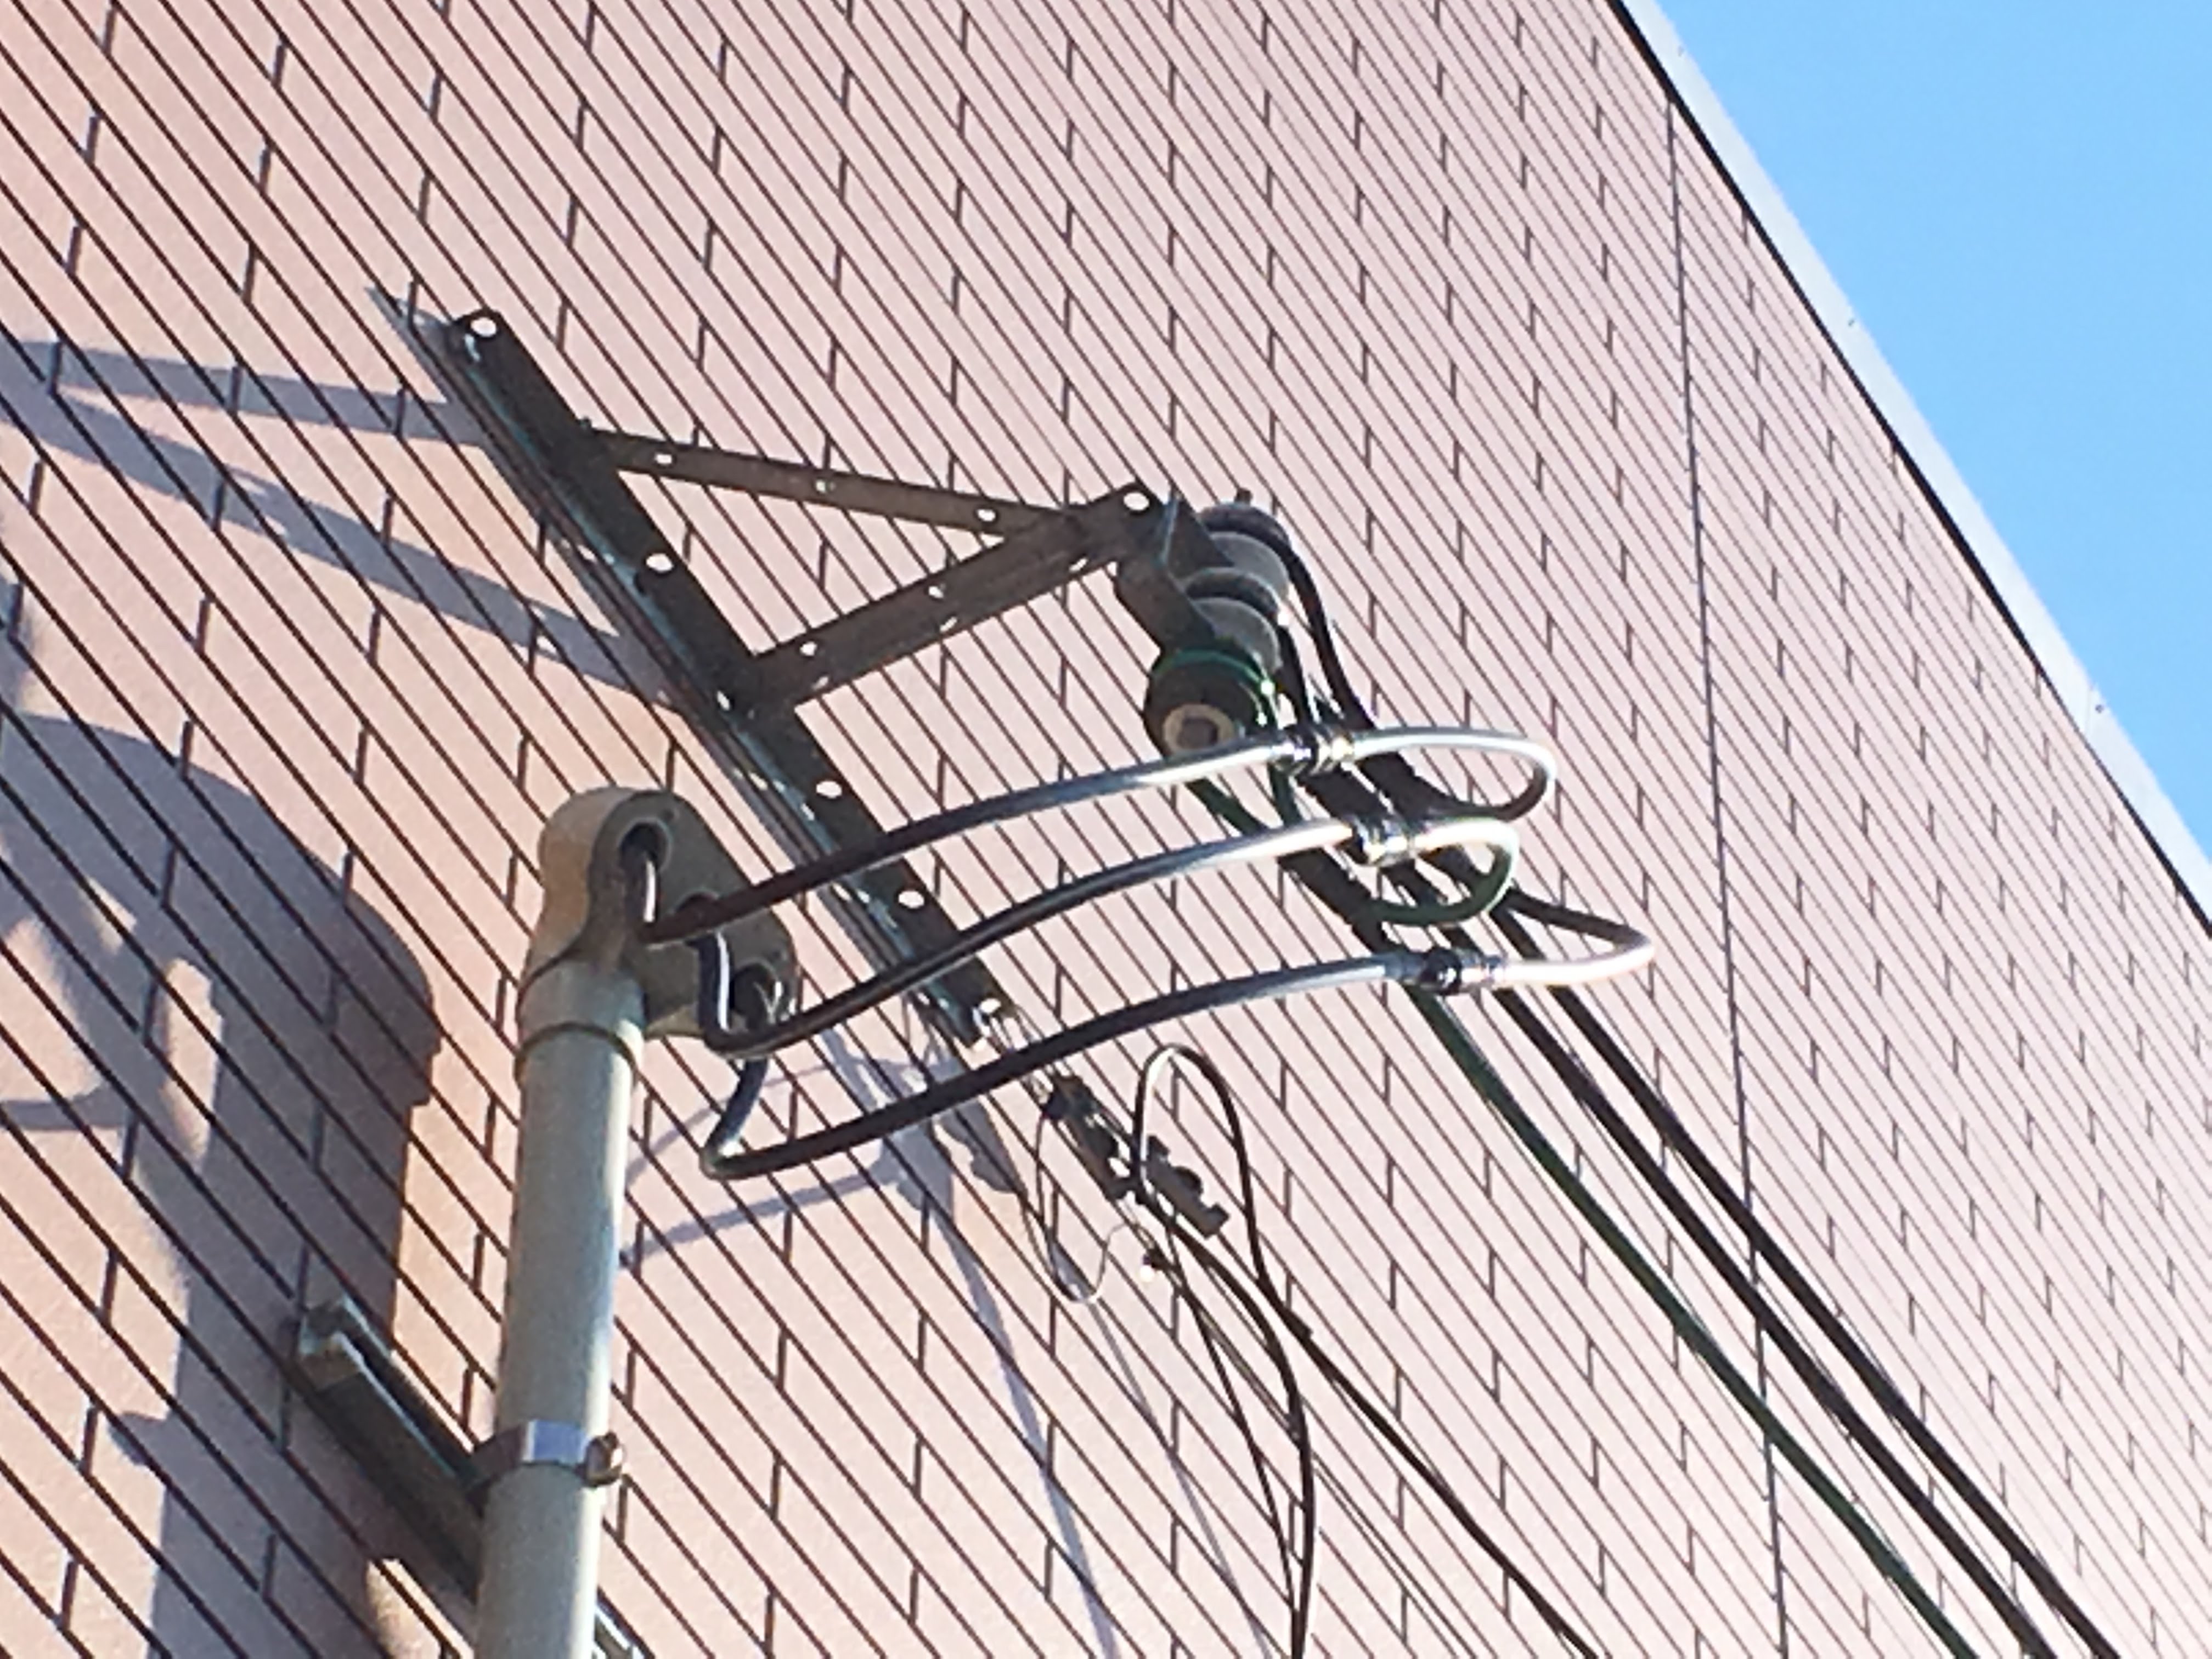 建柱工事・外線工事・引込線工事・計器工事なら愛媛県西条市の有限会社周桑電機工業所